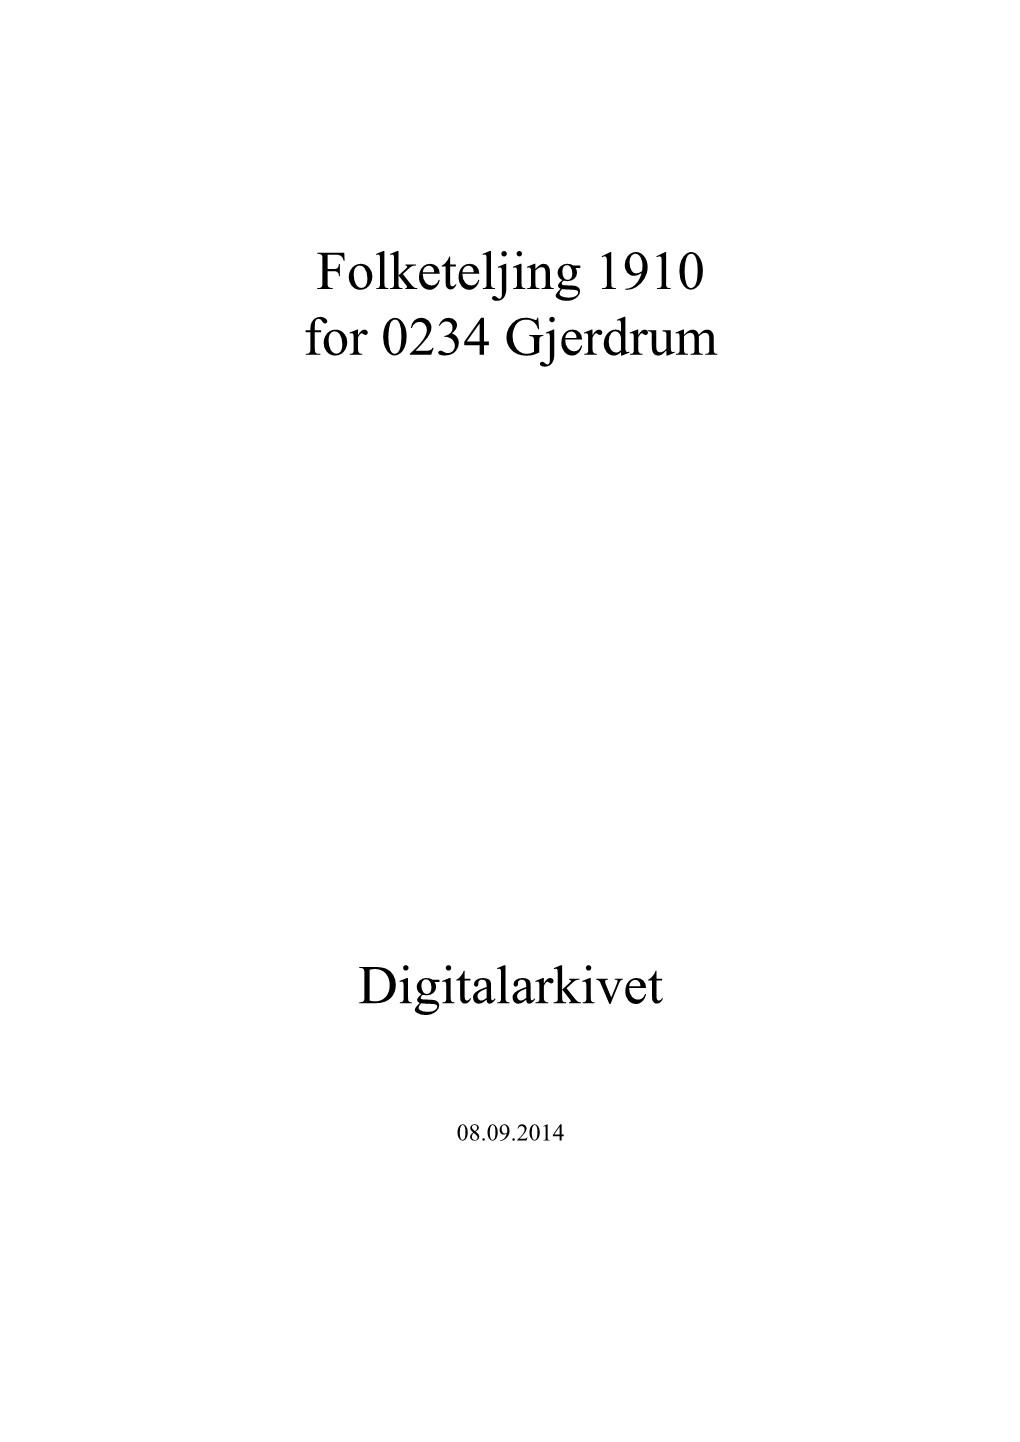 Folketeljing 1910 for 0234 Gjerdrum Digitalarkivet